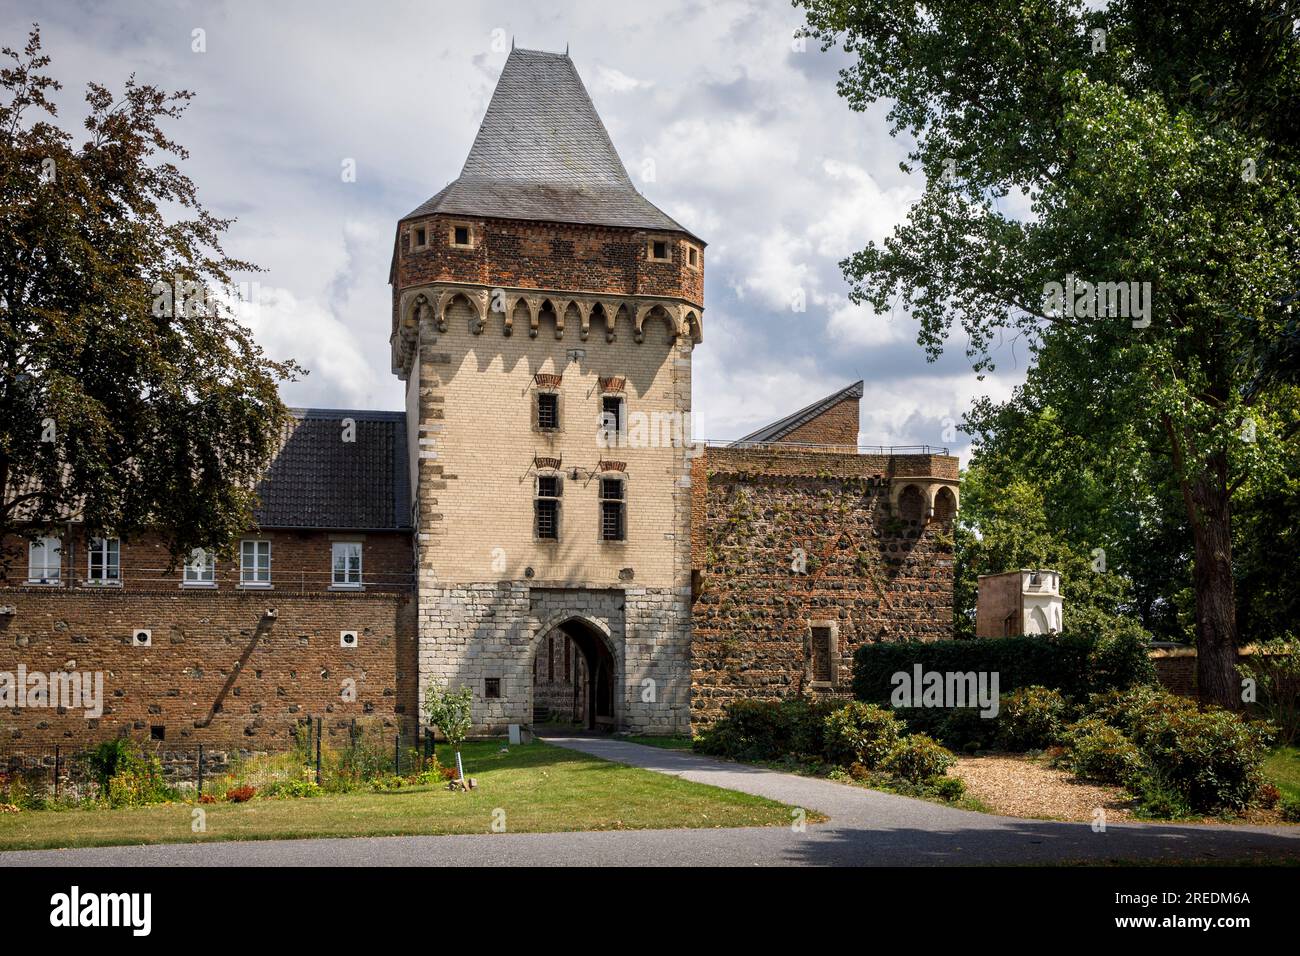 tower gate of castle Friedestrom in Zons on the river Rhine, North Rhine-Westphalia, Germany Tortum der Burg Friedestrom in Zons am Rhein, Nordrhein-W Stock Photo